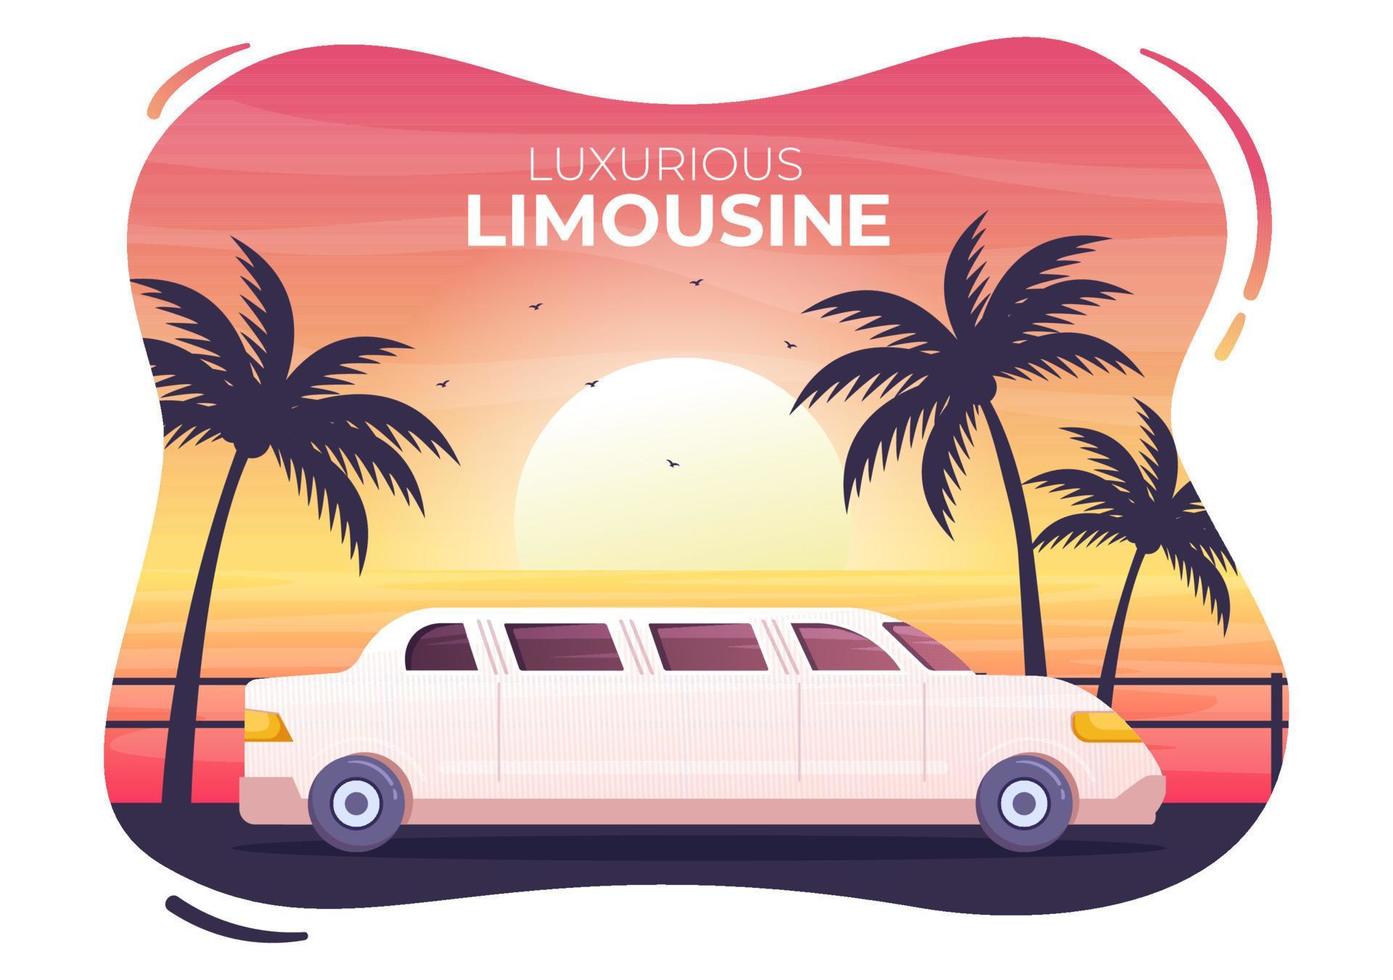 limousinebil med utsikt över solnedgången eller soluppgången på stranden i platt tecknad illustration vektor